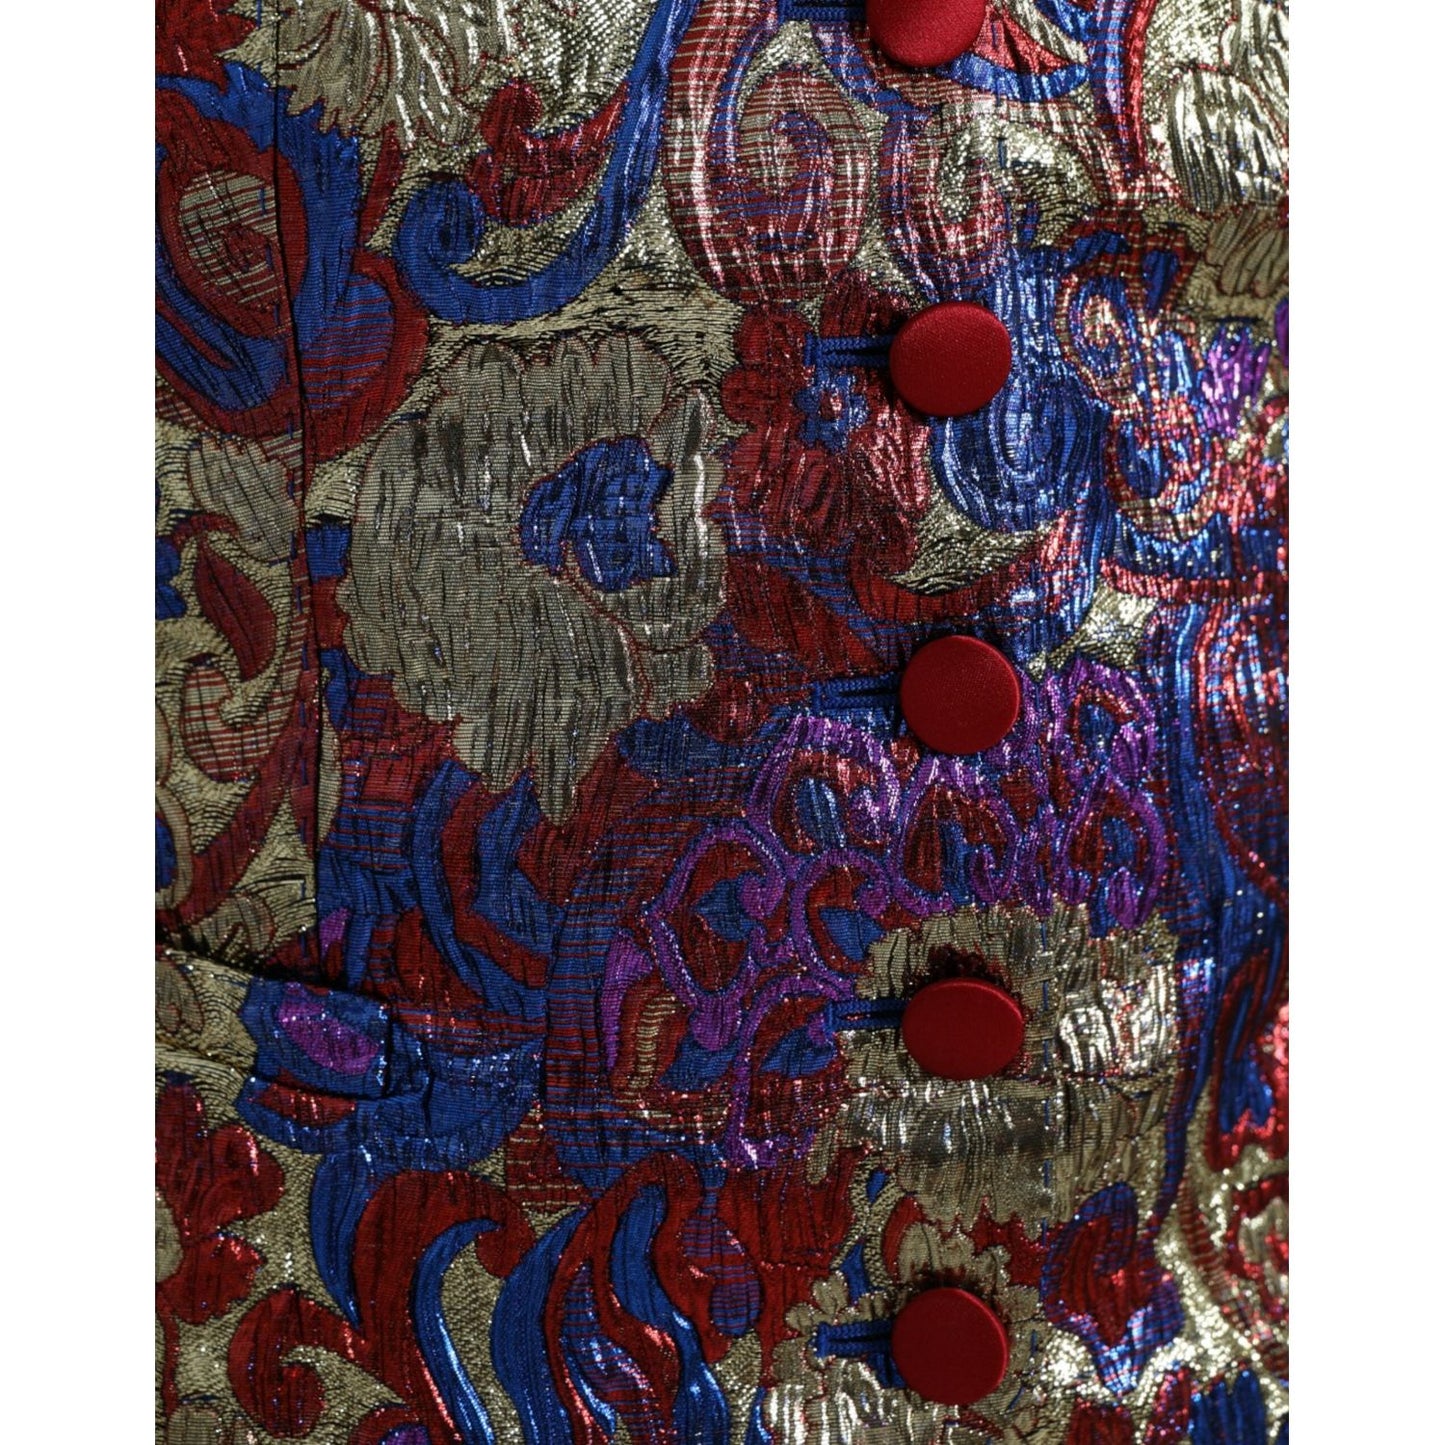 Dolce & Gabbana Multicolor Floral Print Jacquard Waistcoat Vest multicolor-jacquard-button-waistcoat-vest-top